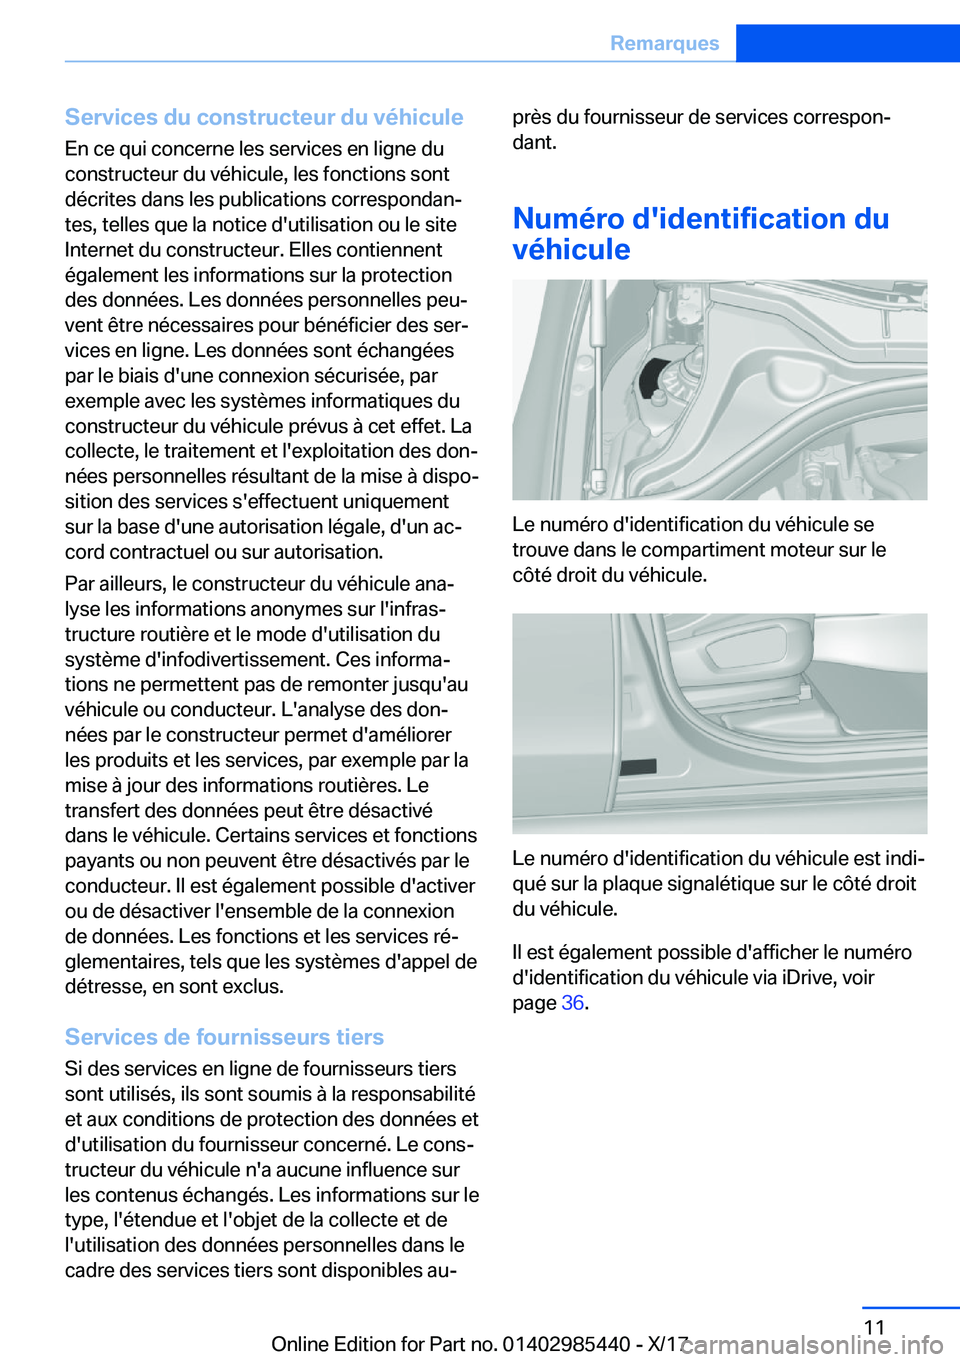 BMW X1 2018  Notices Demploi (in French) �S�e�r�v�i�c�e�s��d�u��c�o�n�s�t�r�u�c�t�e�u�r��d�u��v�é�h�i�c�u�l�e�E�n� �c�e� �q�u�i� �c�o�n�c�e�r�n�e� �l�e�s� �s�e�r�v�i�c�e�s� �e�n� �l�i�g�n�e� �d�u�c�o�n�s�t�r�u�c�t�e�u�r� �d�u� �v�é�h�i